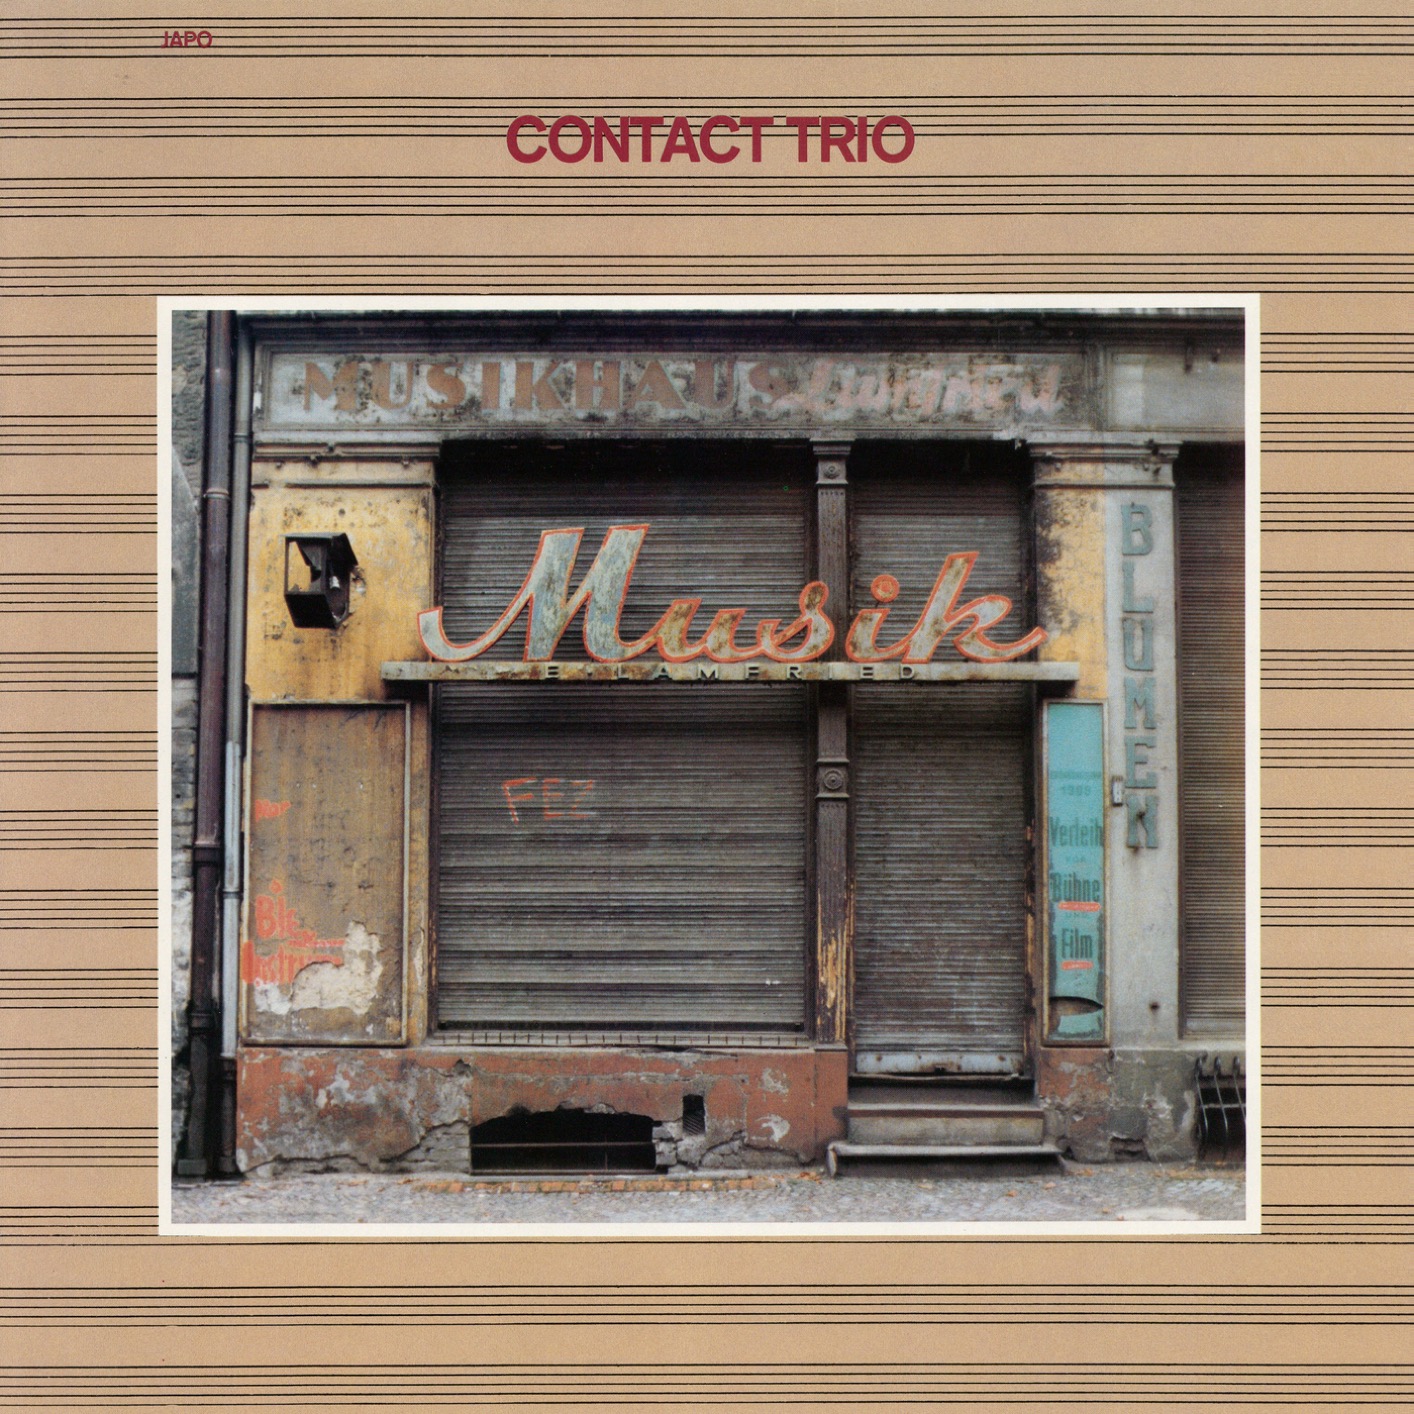 Contact Trio - Musik (1981/2019) [FLAC 24bit/96kHz]